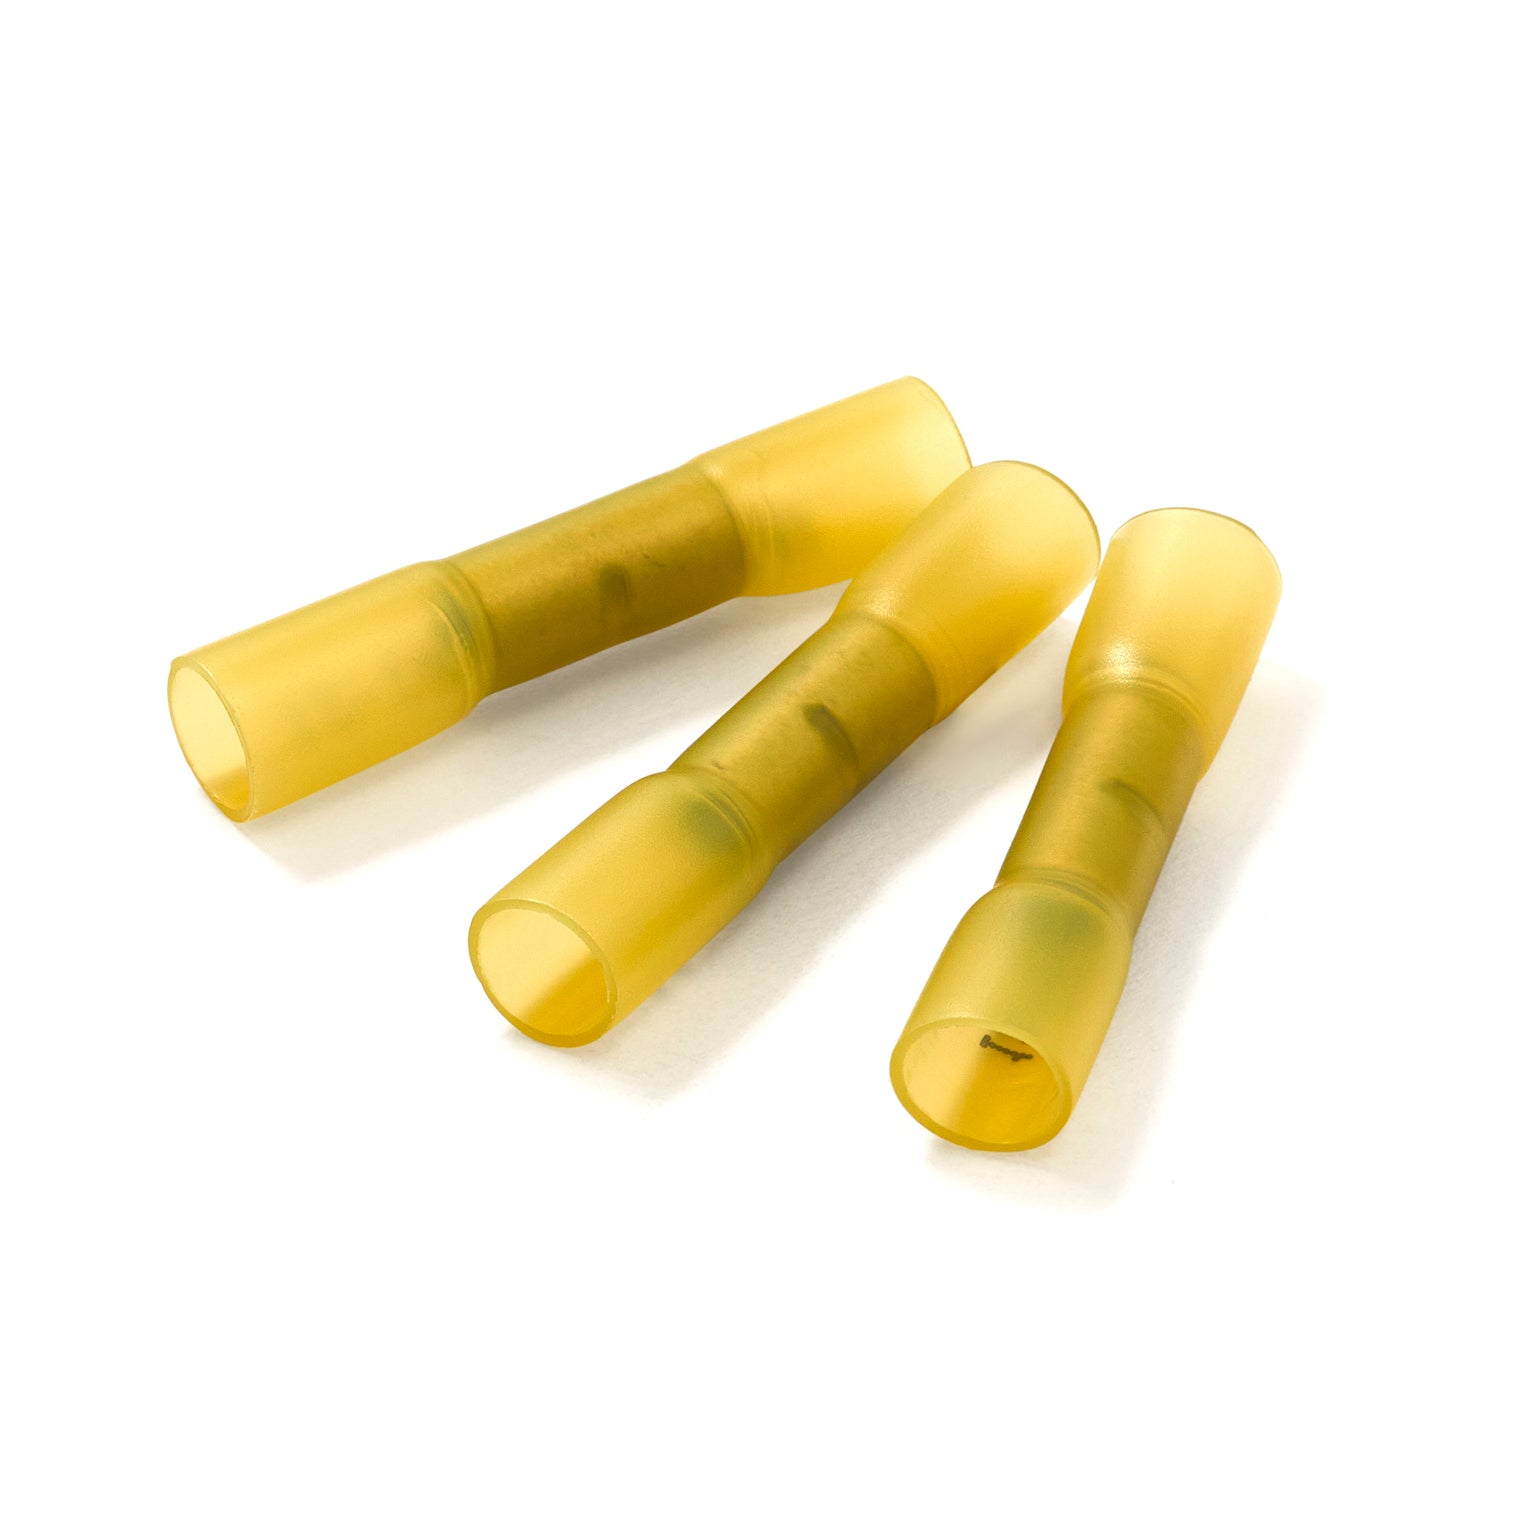 Yellow Heatshrink Butt Connectors - Pack of 100